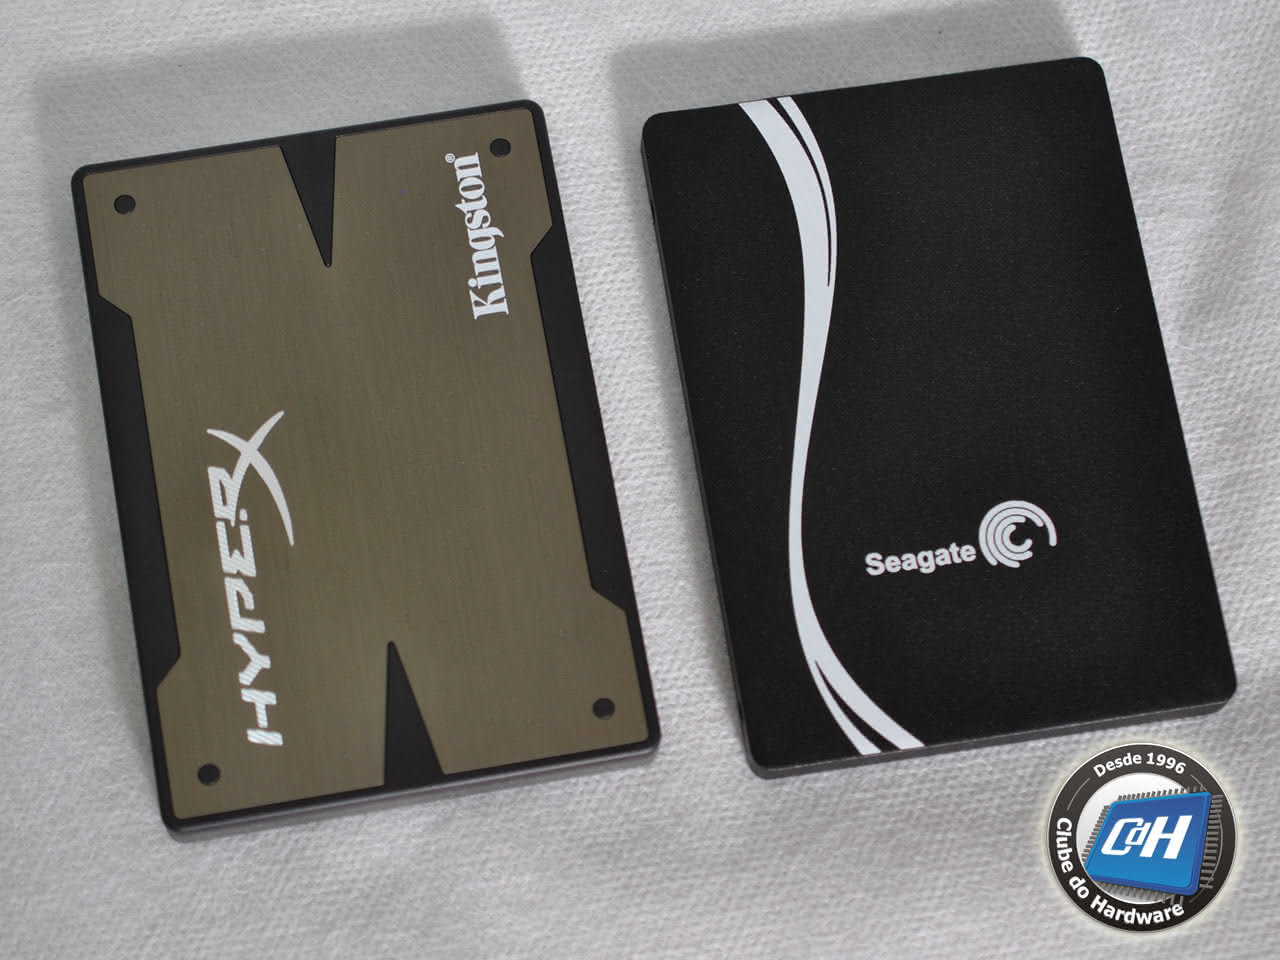 Teste das Unidades SSD Seagate 600 480 GiB vs. Kingston HyperX 3K 480 GiB